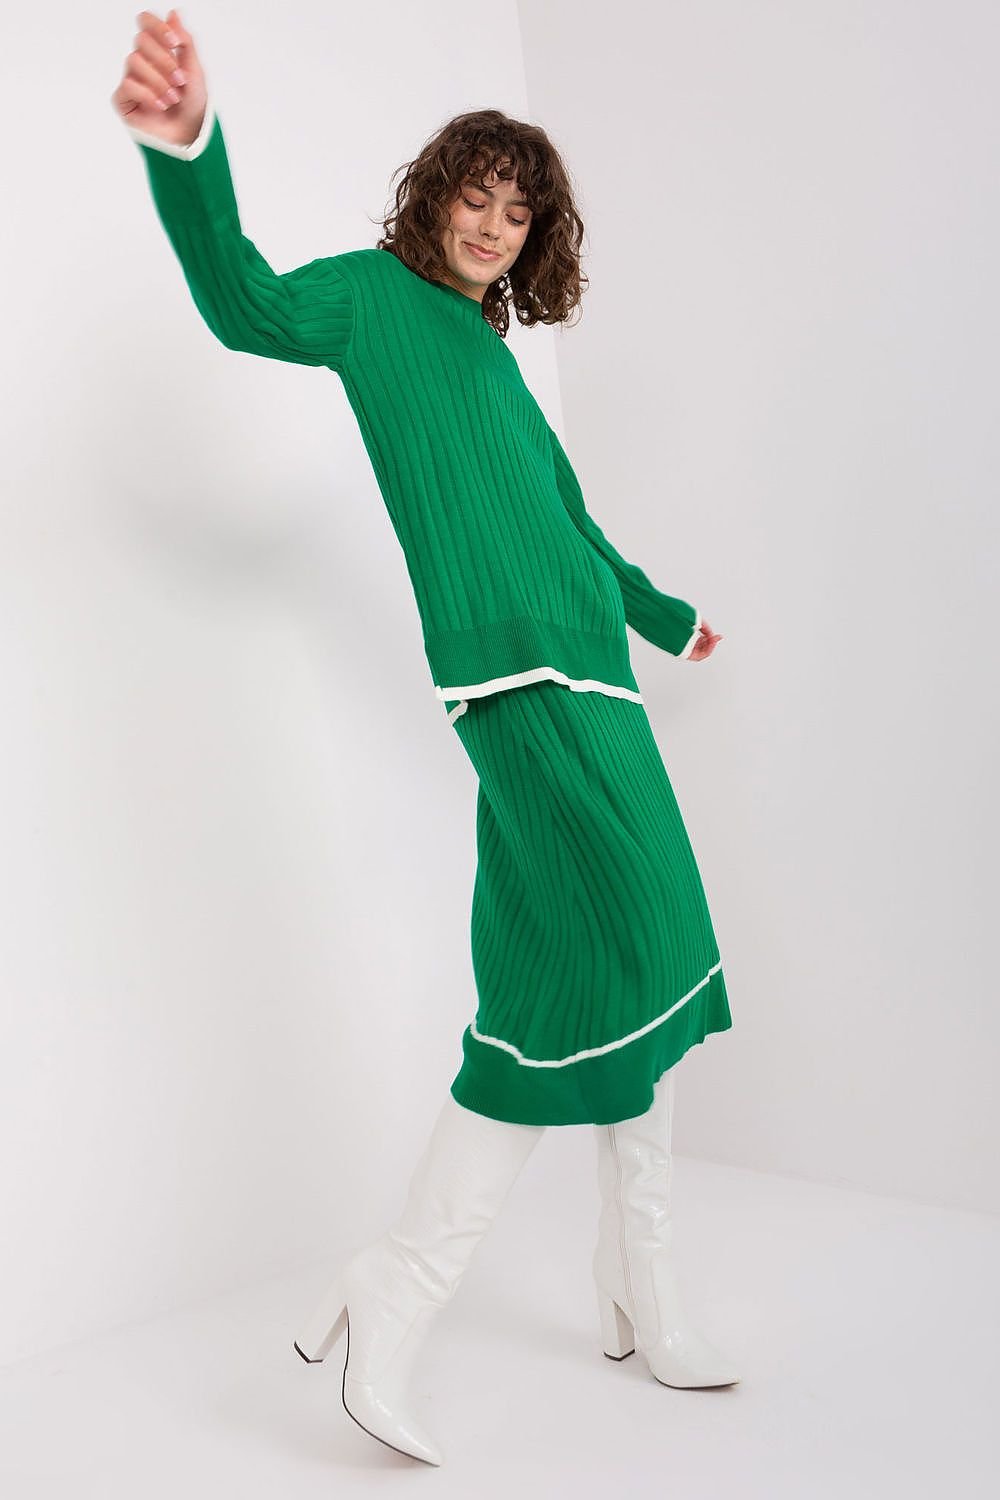 Jupe longue verte en maille avec haut assorti pour un look élégant et confortable, idéal pour la collection automne-hiver.